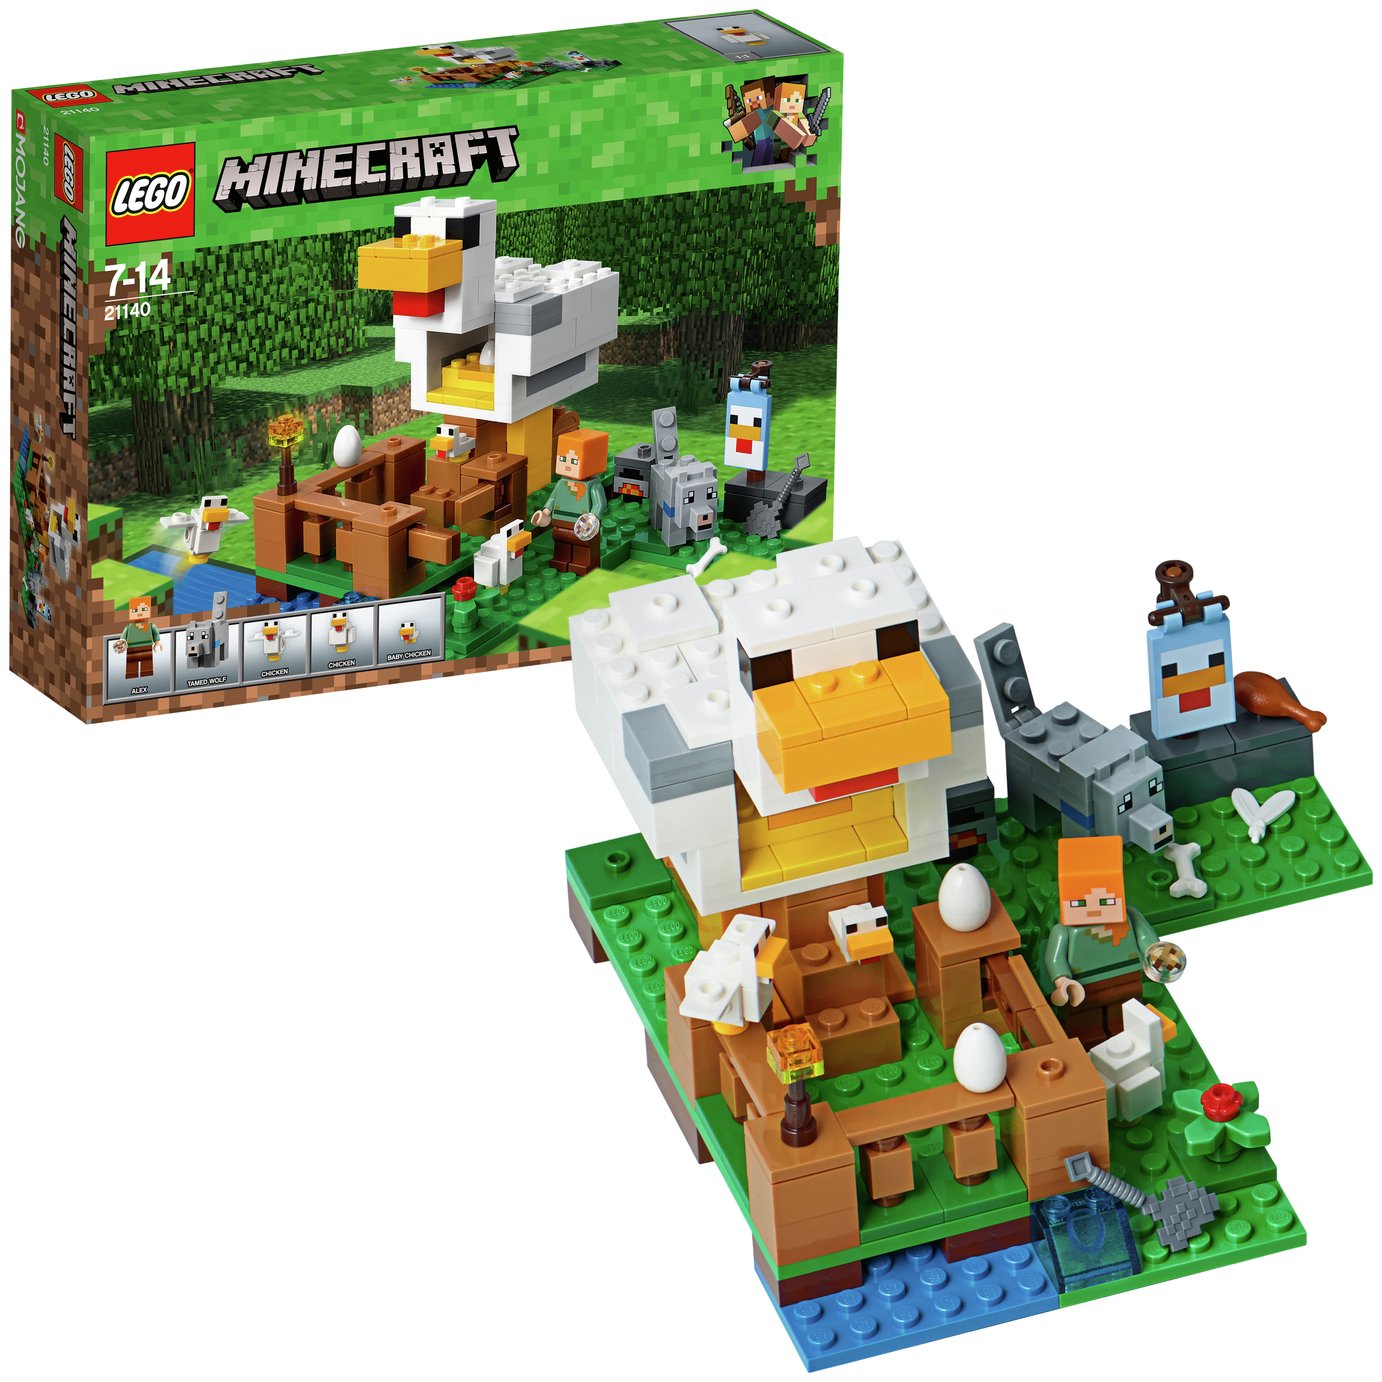 LEGO Minecraft The Chicken Coop Farm Animal Toy - 21140